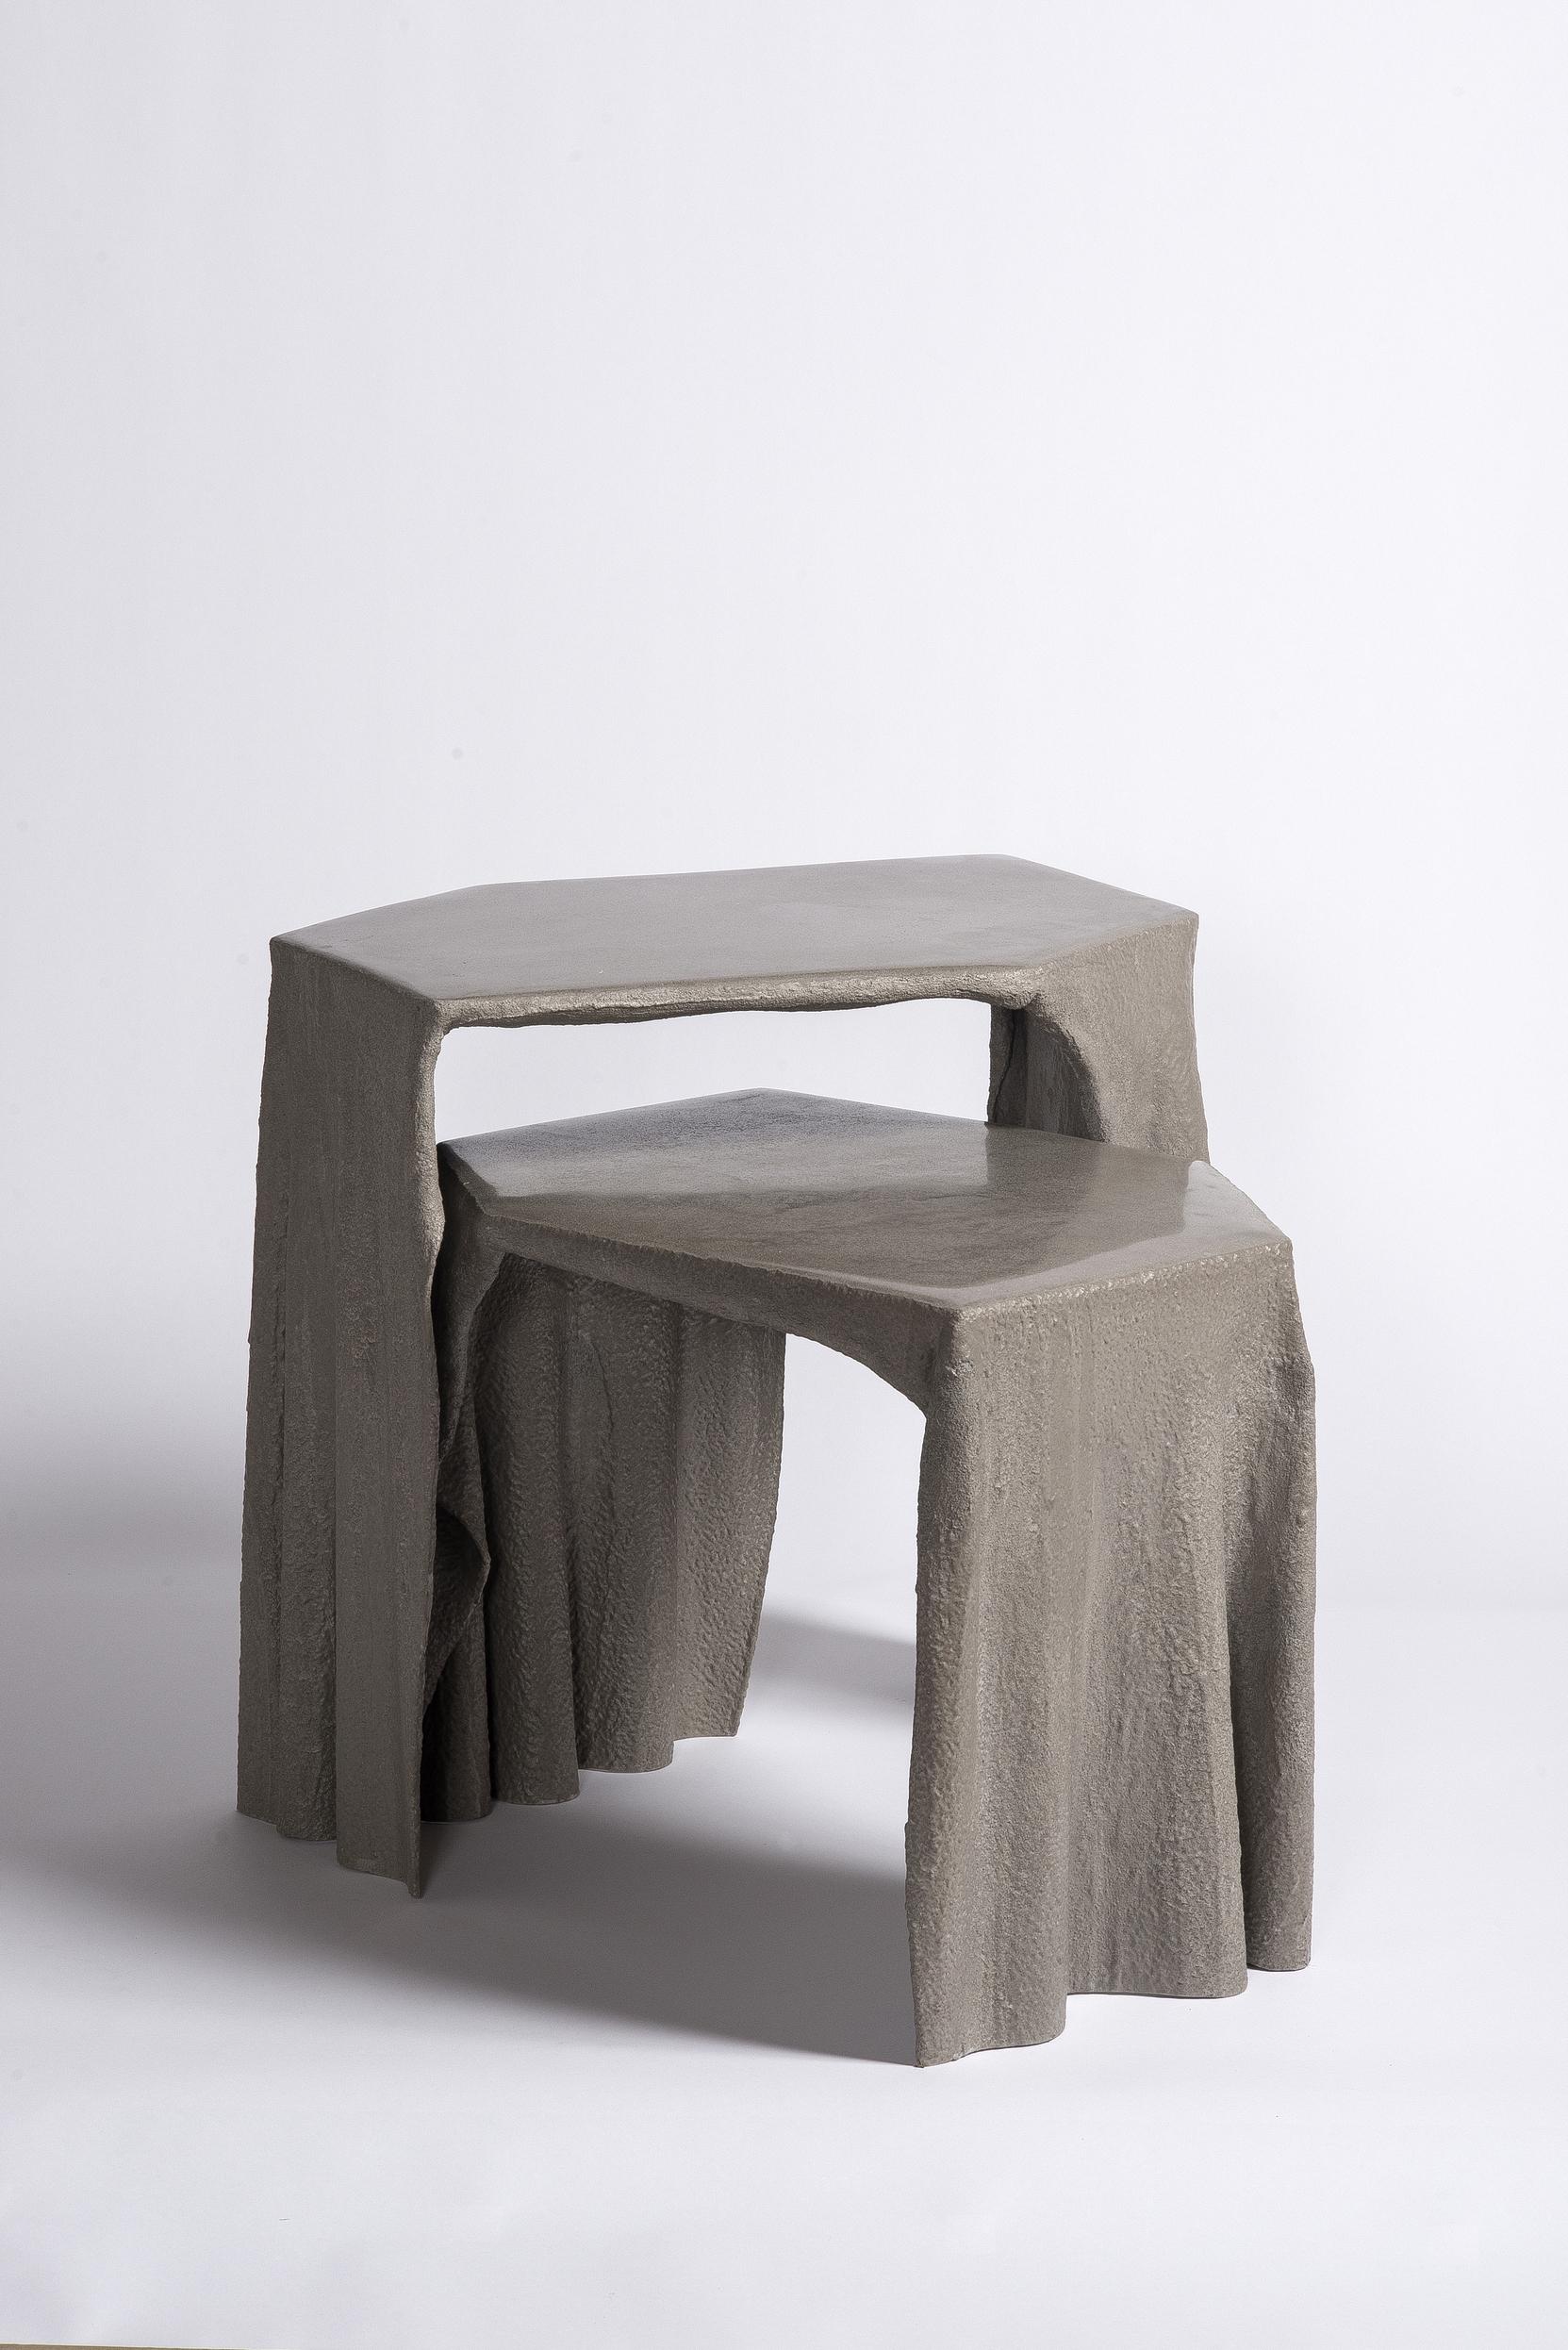 Inspiriert von Antoni Gaudís Formstudie mit der Schwerkraft. Die organische Form dieses Tisches ist von natürlichen Strukturen wie Bäumen abgeleitet. Trotz seines filigranen Aussehens kann der Tisch ein Gewicht von etwa 40 Pfund tragen, obwohl er